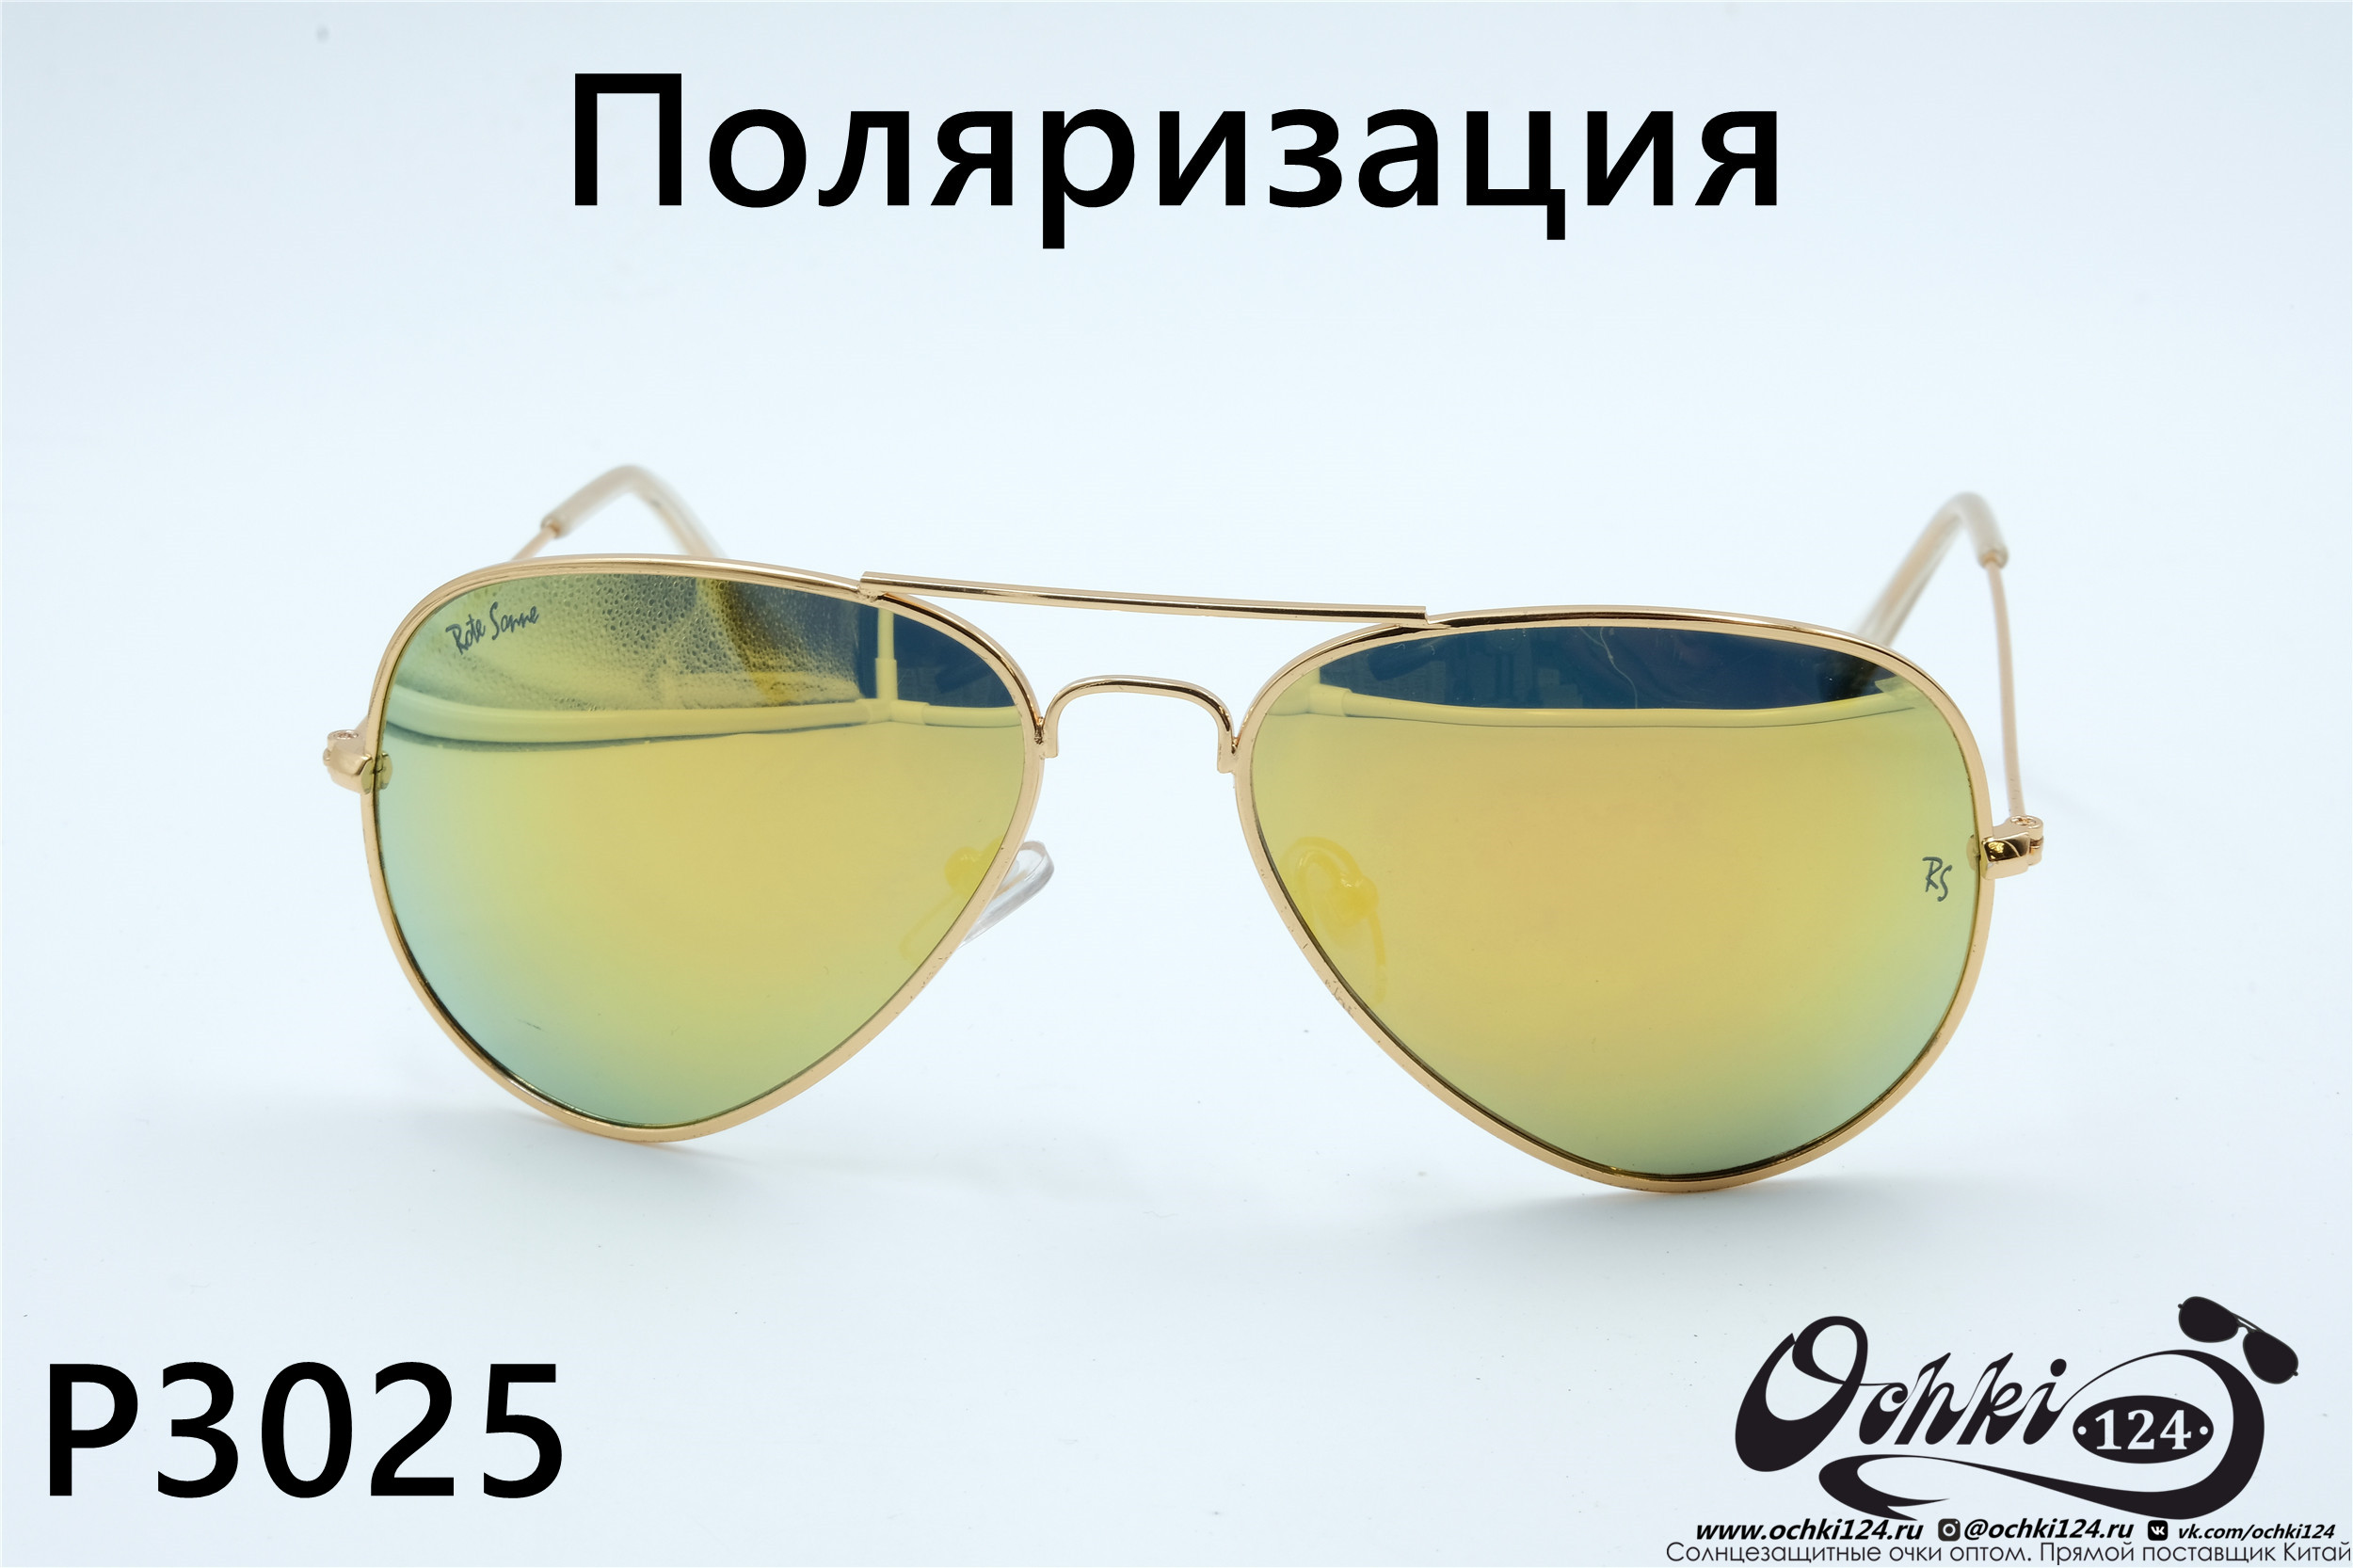  Солнцезащитные очки картинка 2022 Унисекс Поляризованные Авиаторы Rote Sonne P3025-1 